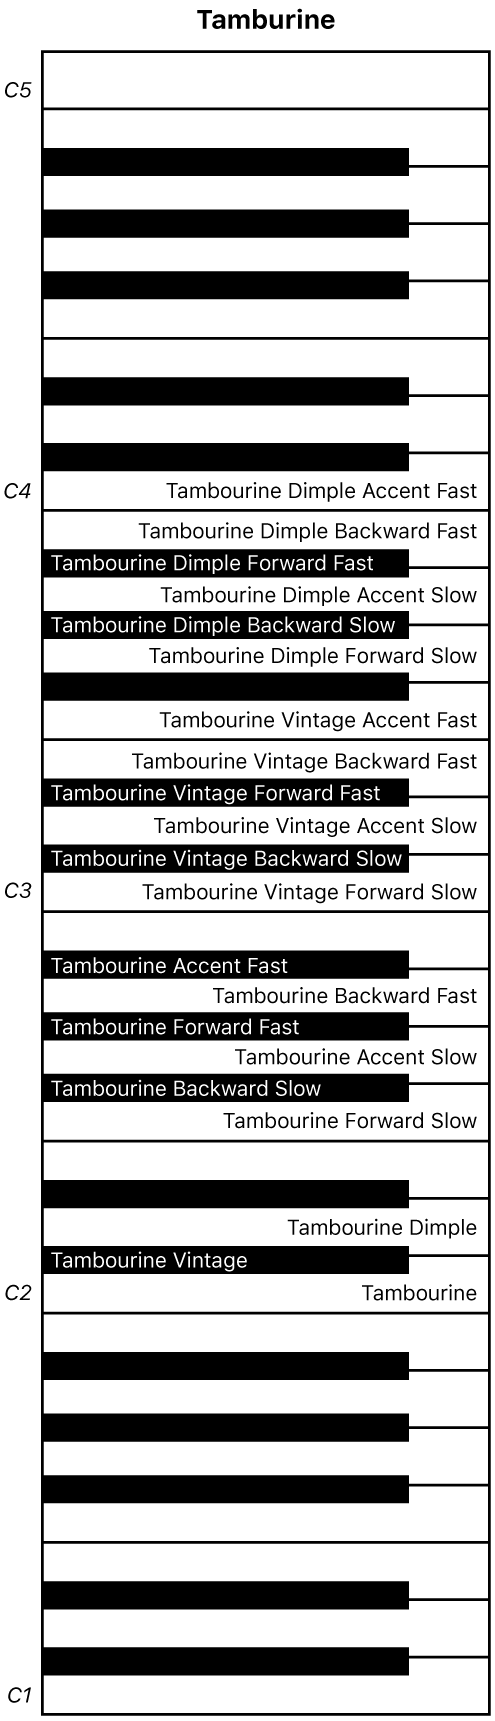 Figură. Harta claviaturii pentru interpretarea Tamburine.